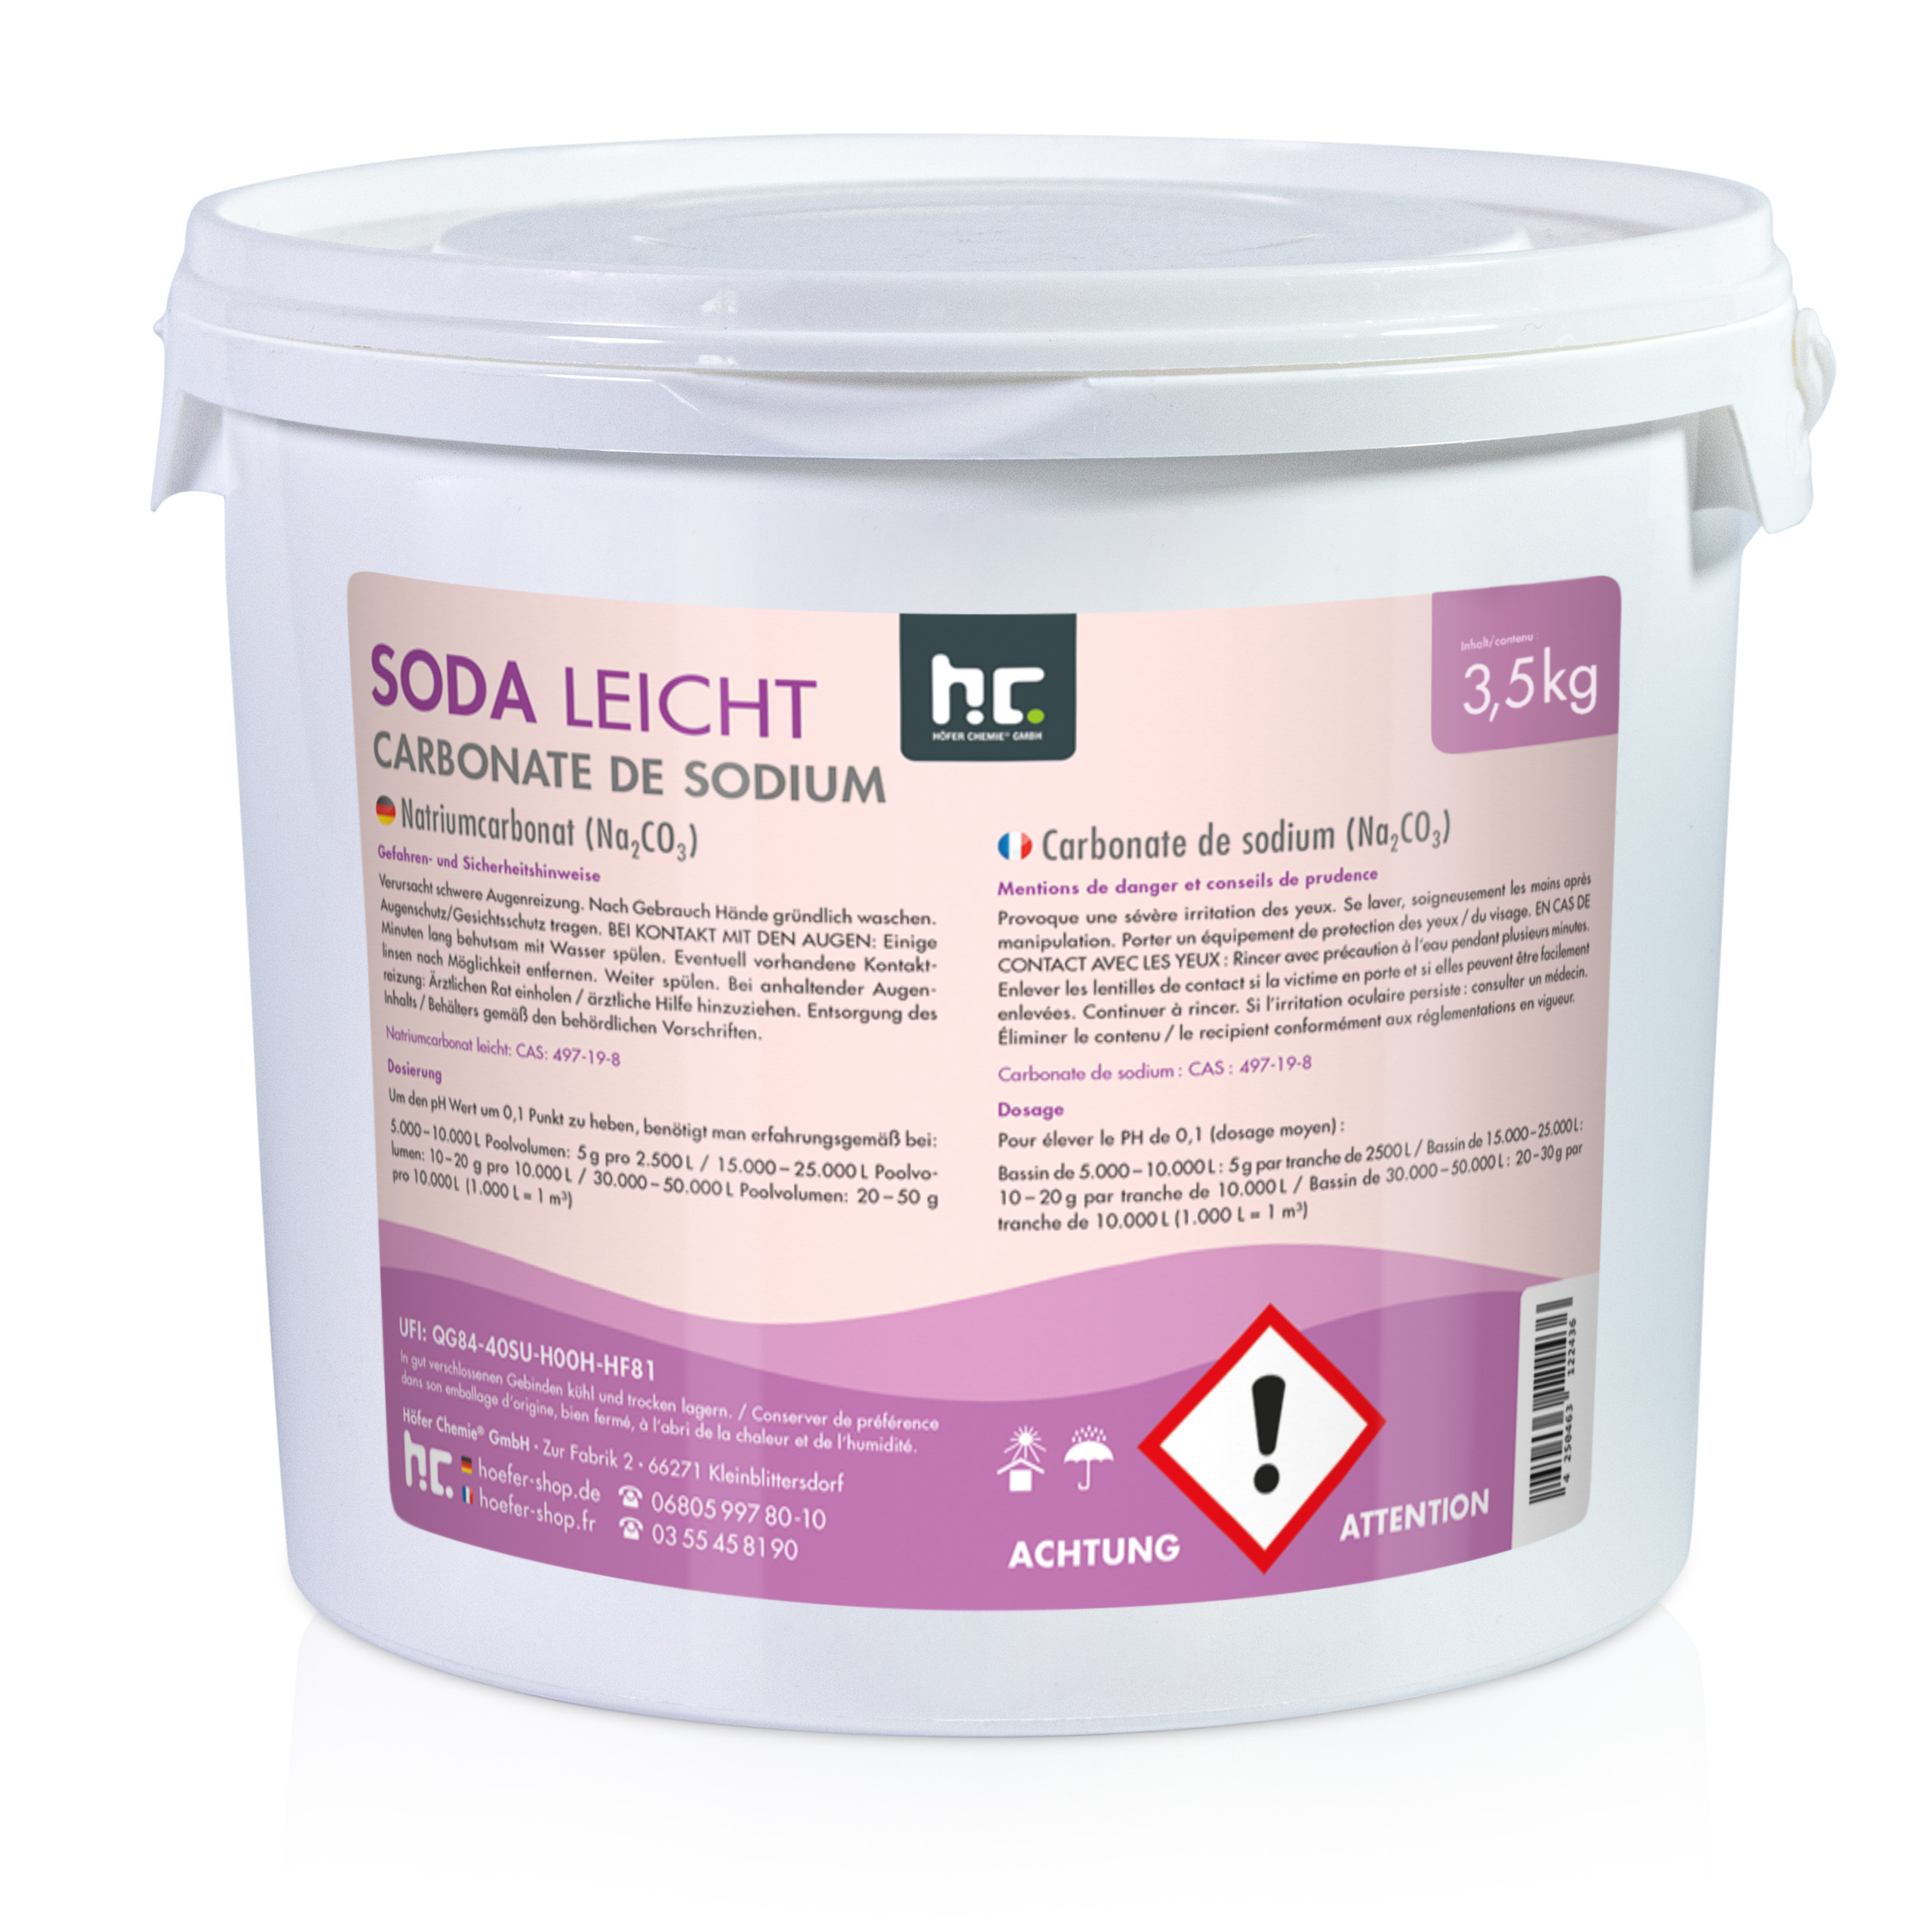 3,5 kg de Carbonate de Sodium (Soda) qualité technique légère